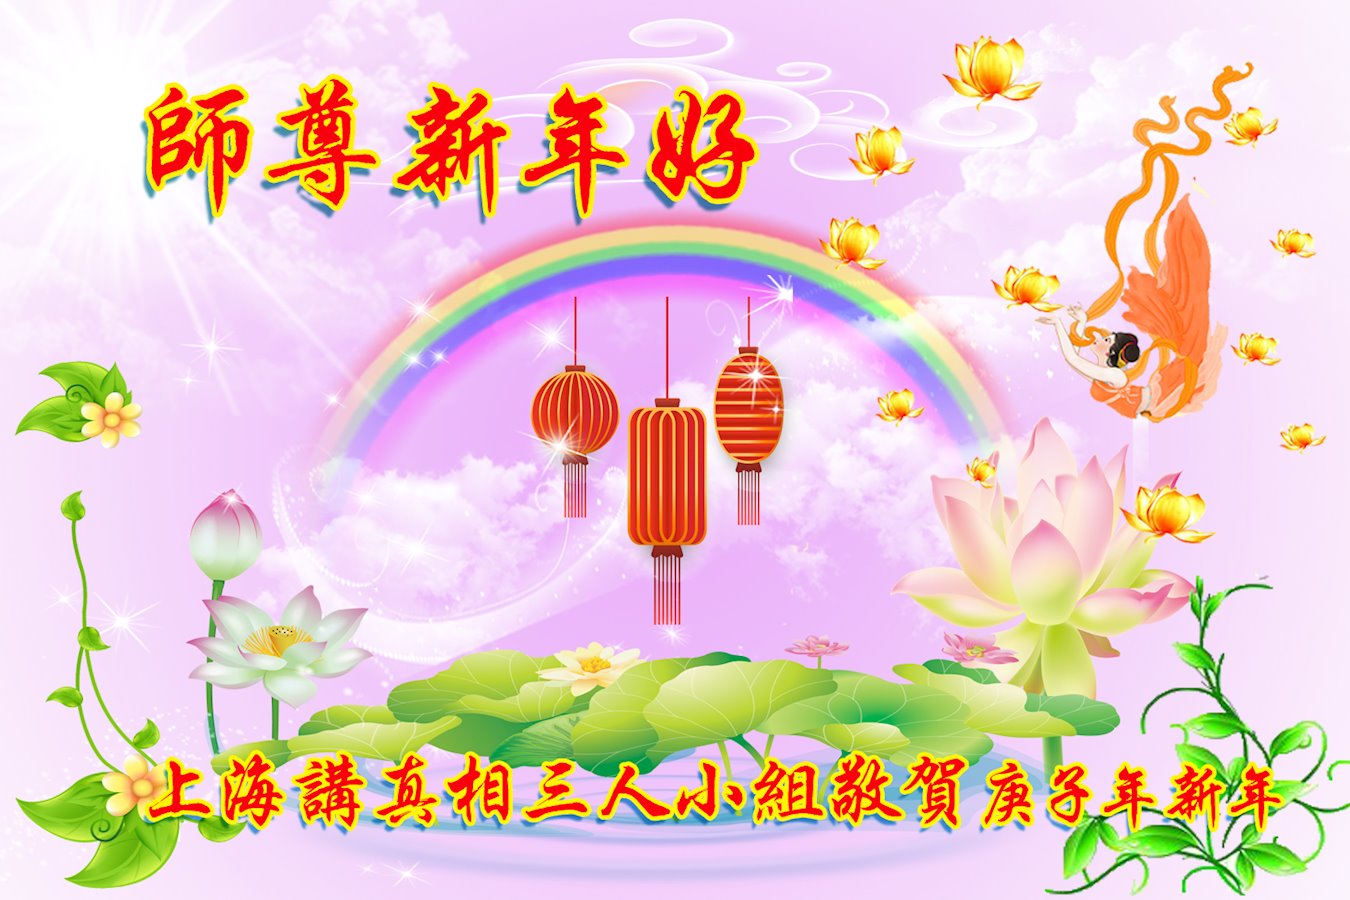 Image for article Les pratiquants de Falun Dafa qui révèlent la persécution en Chine souhaitent respectueusement à Maître Li un bon Nouvel An chinois ! 